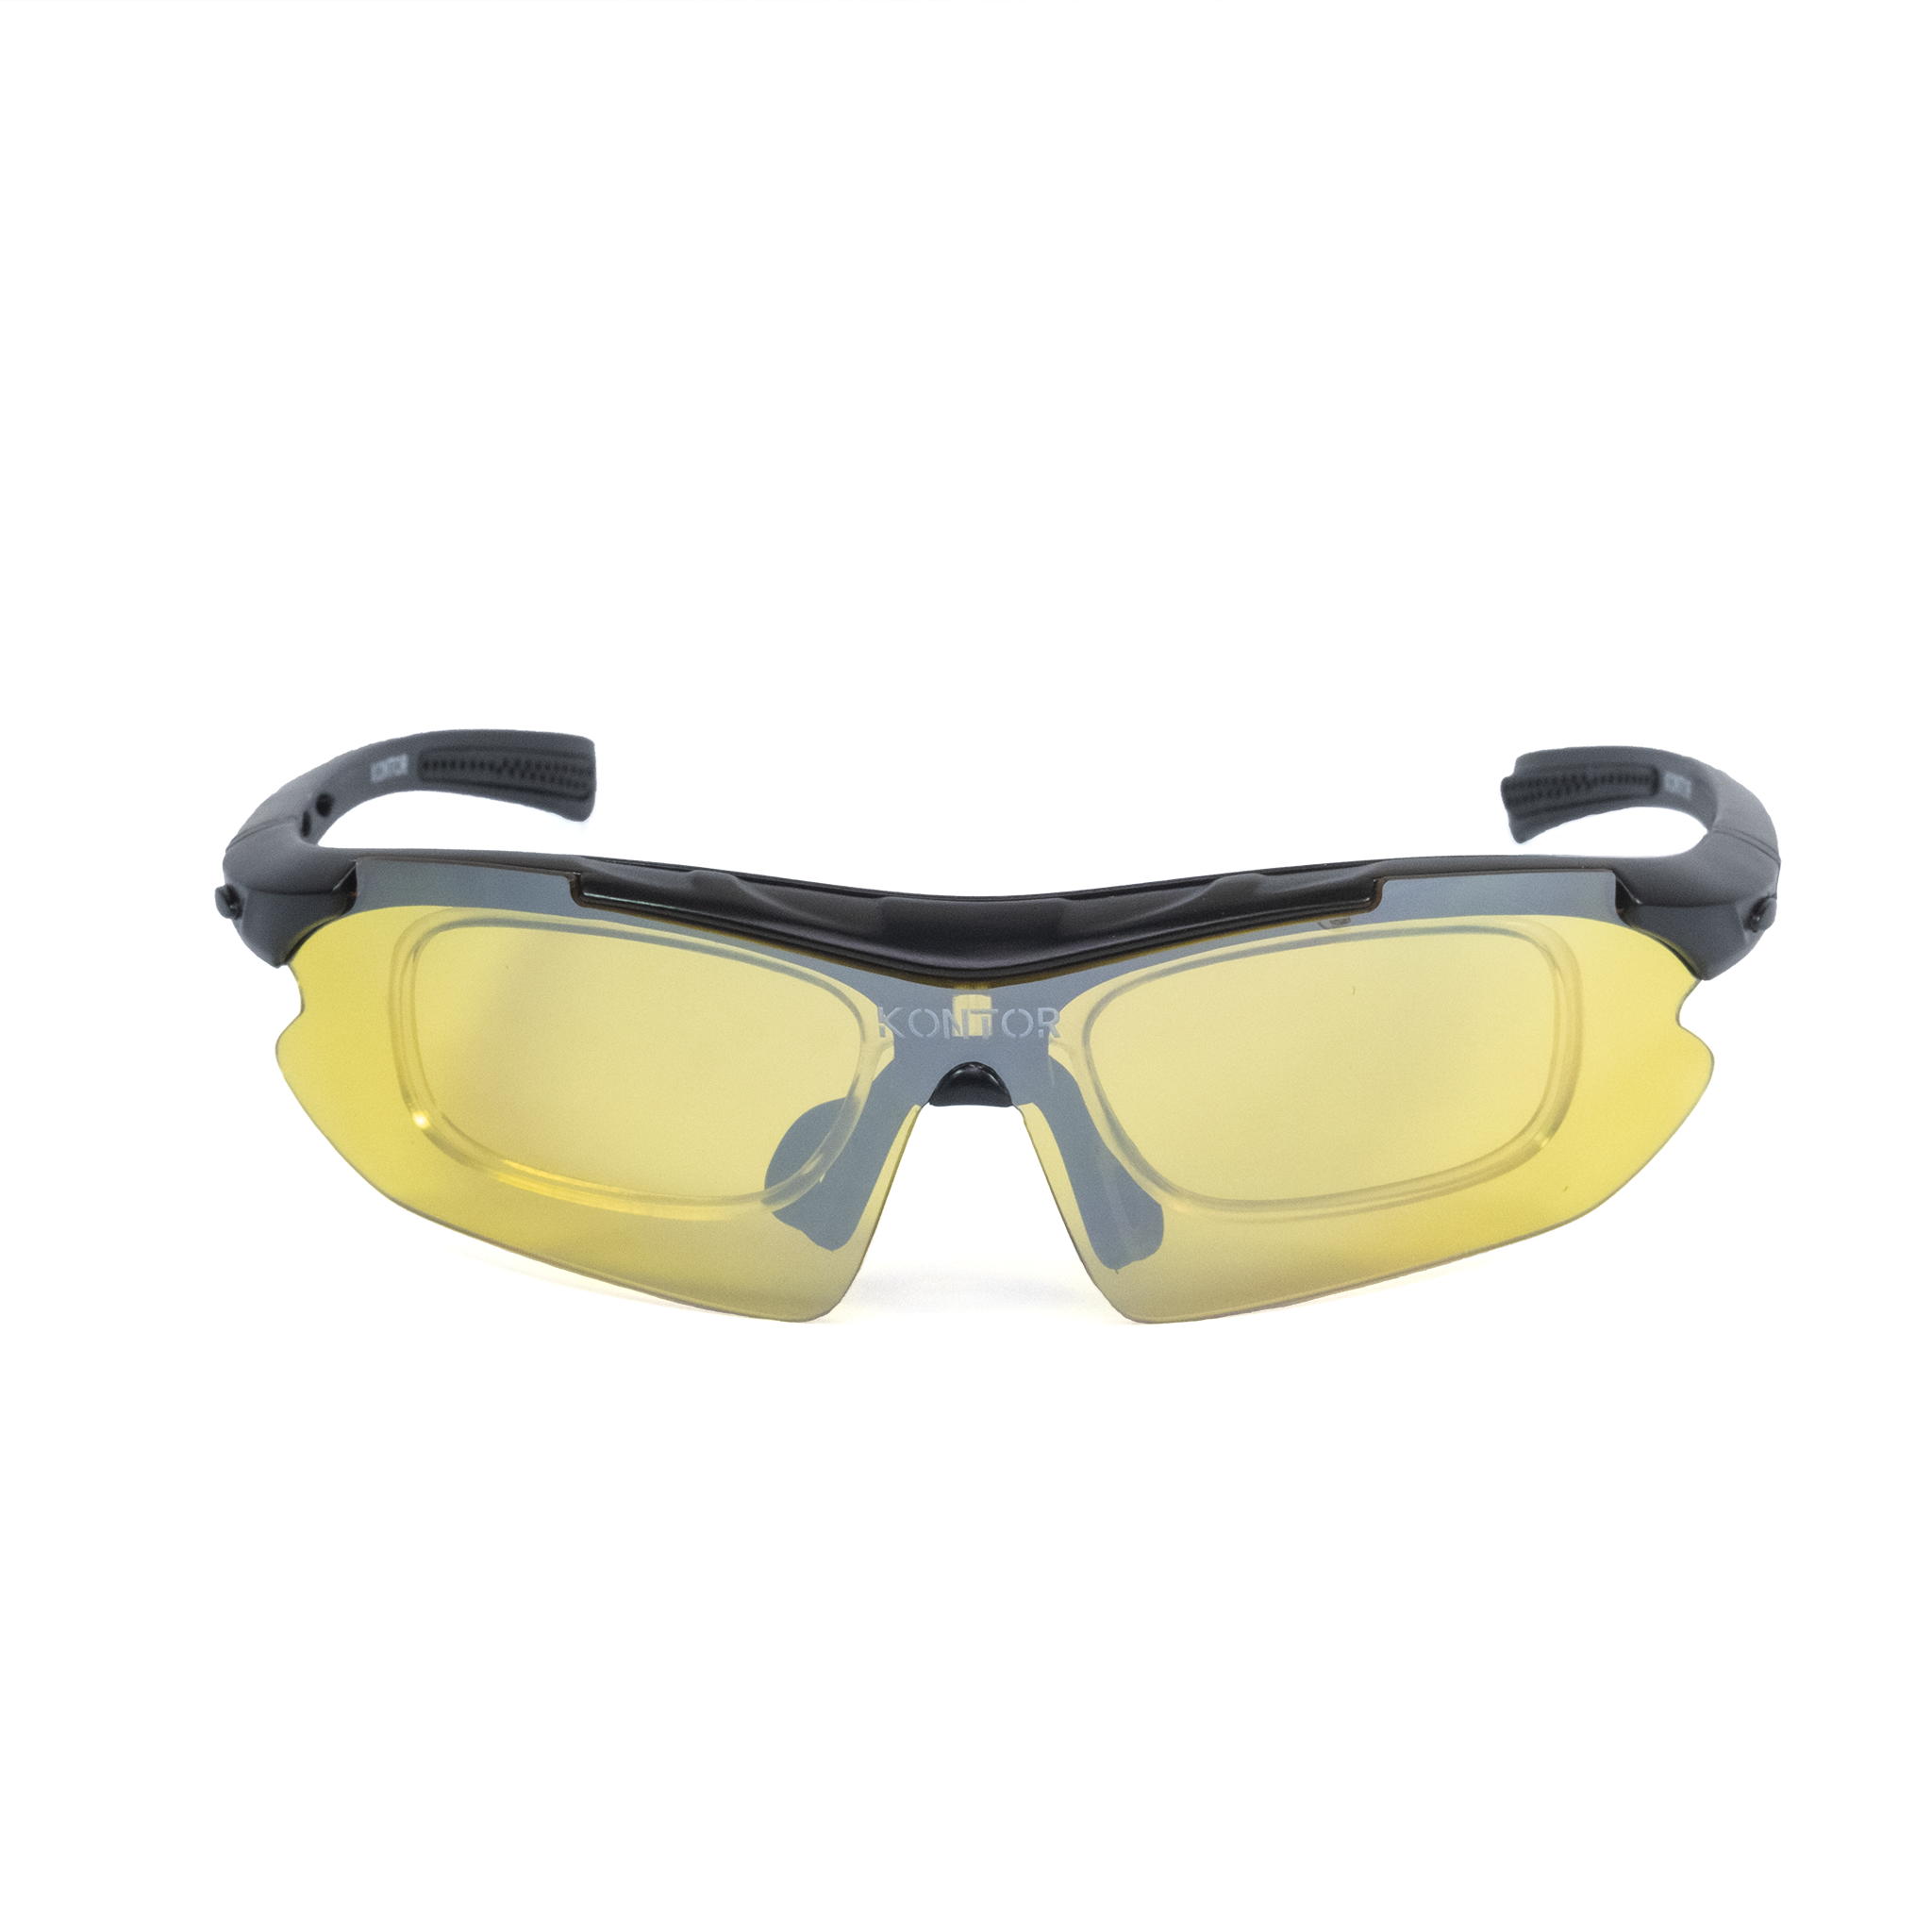 Delta - Hi-Vis Yellow – Kontor eyewear